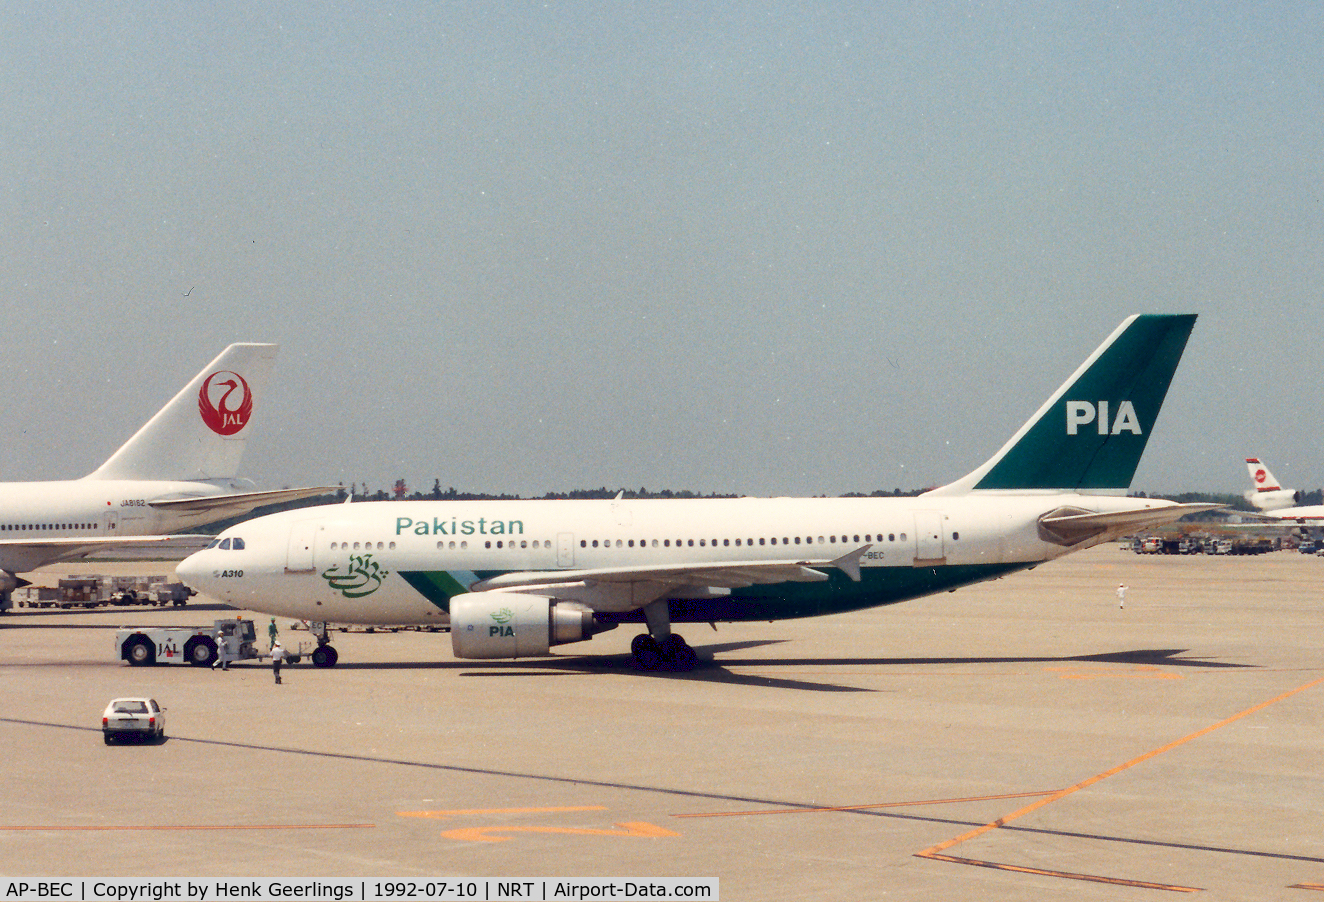 AP-BEC, 1991 Airbus A310-308 C/N 590, PIA